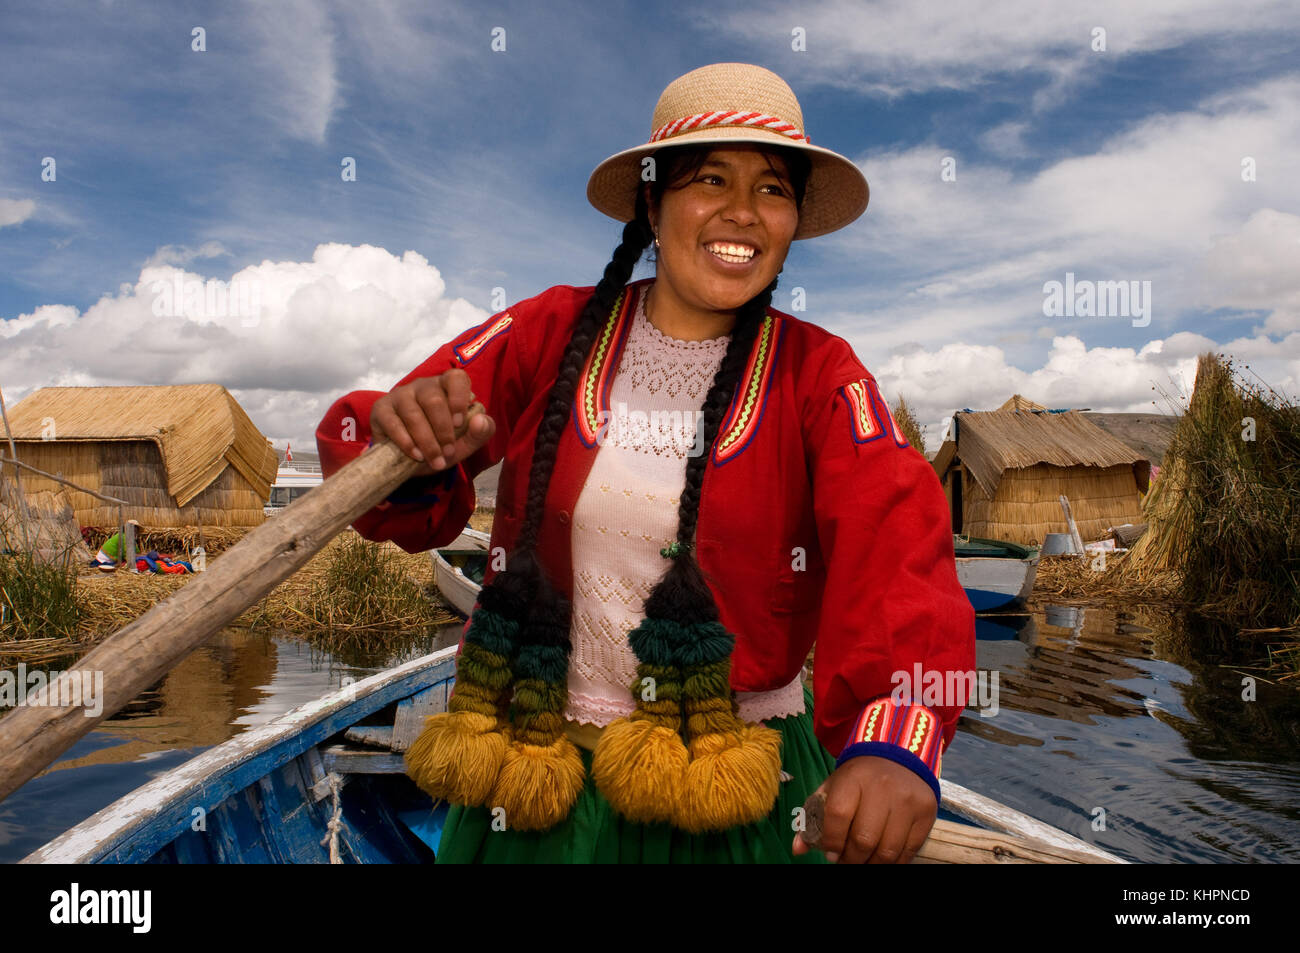 L'île uros, lac Titicaca, Pérou, Amérique du Sud. une femme vêtue de voiles robes traditionnelles de la région son bateau entre les îles Uros. Banque D'Images